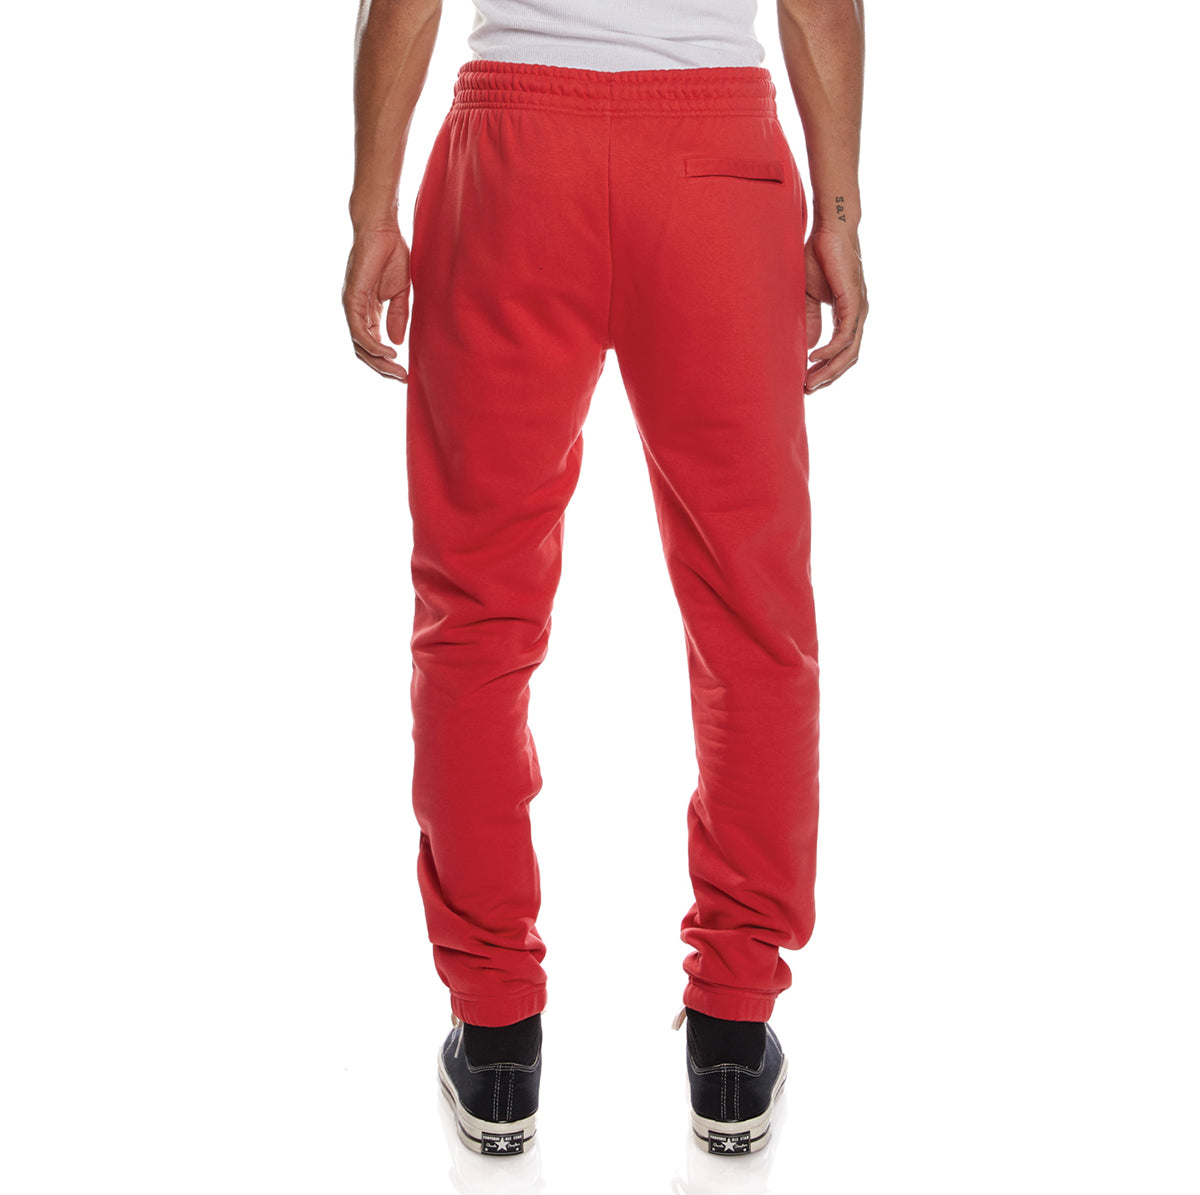 Pantalón Katowice rojo hombre - imagen 2